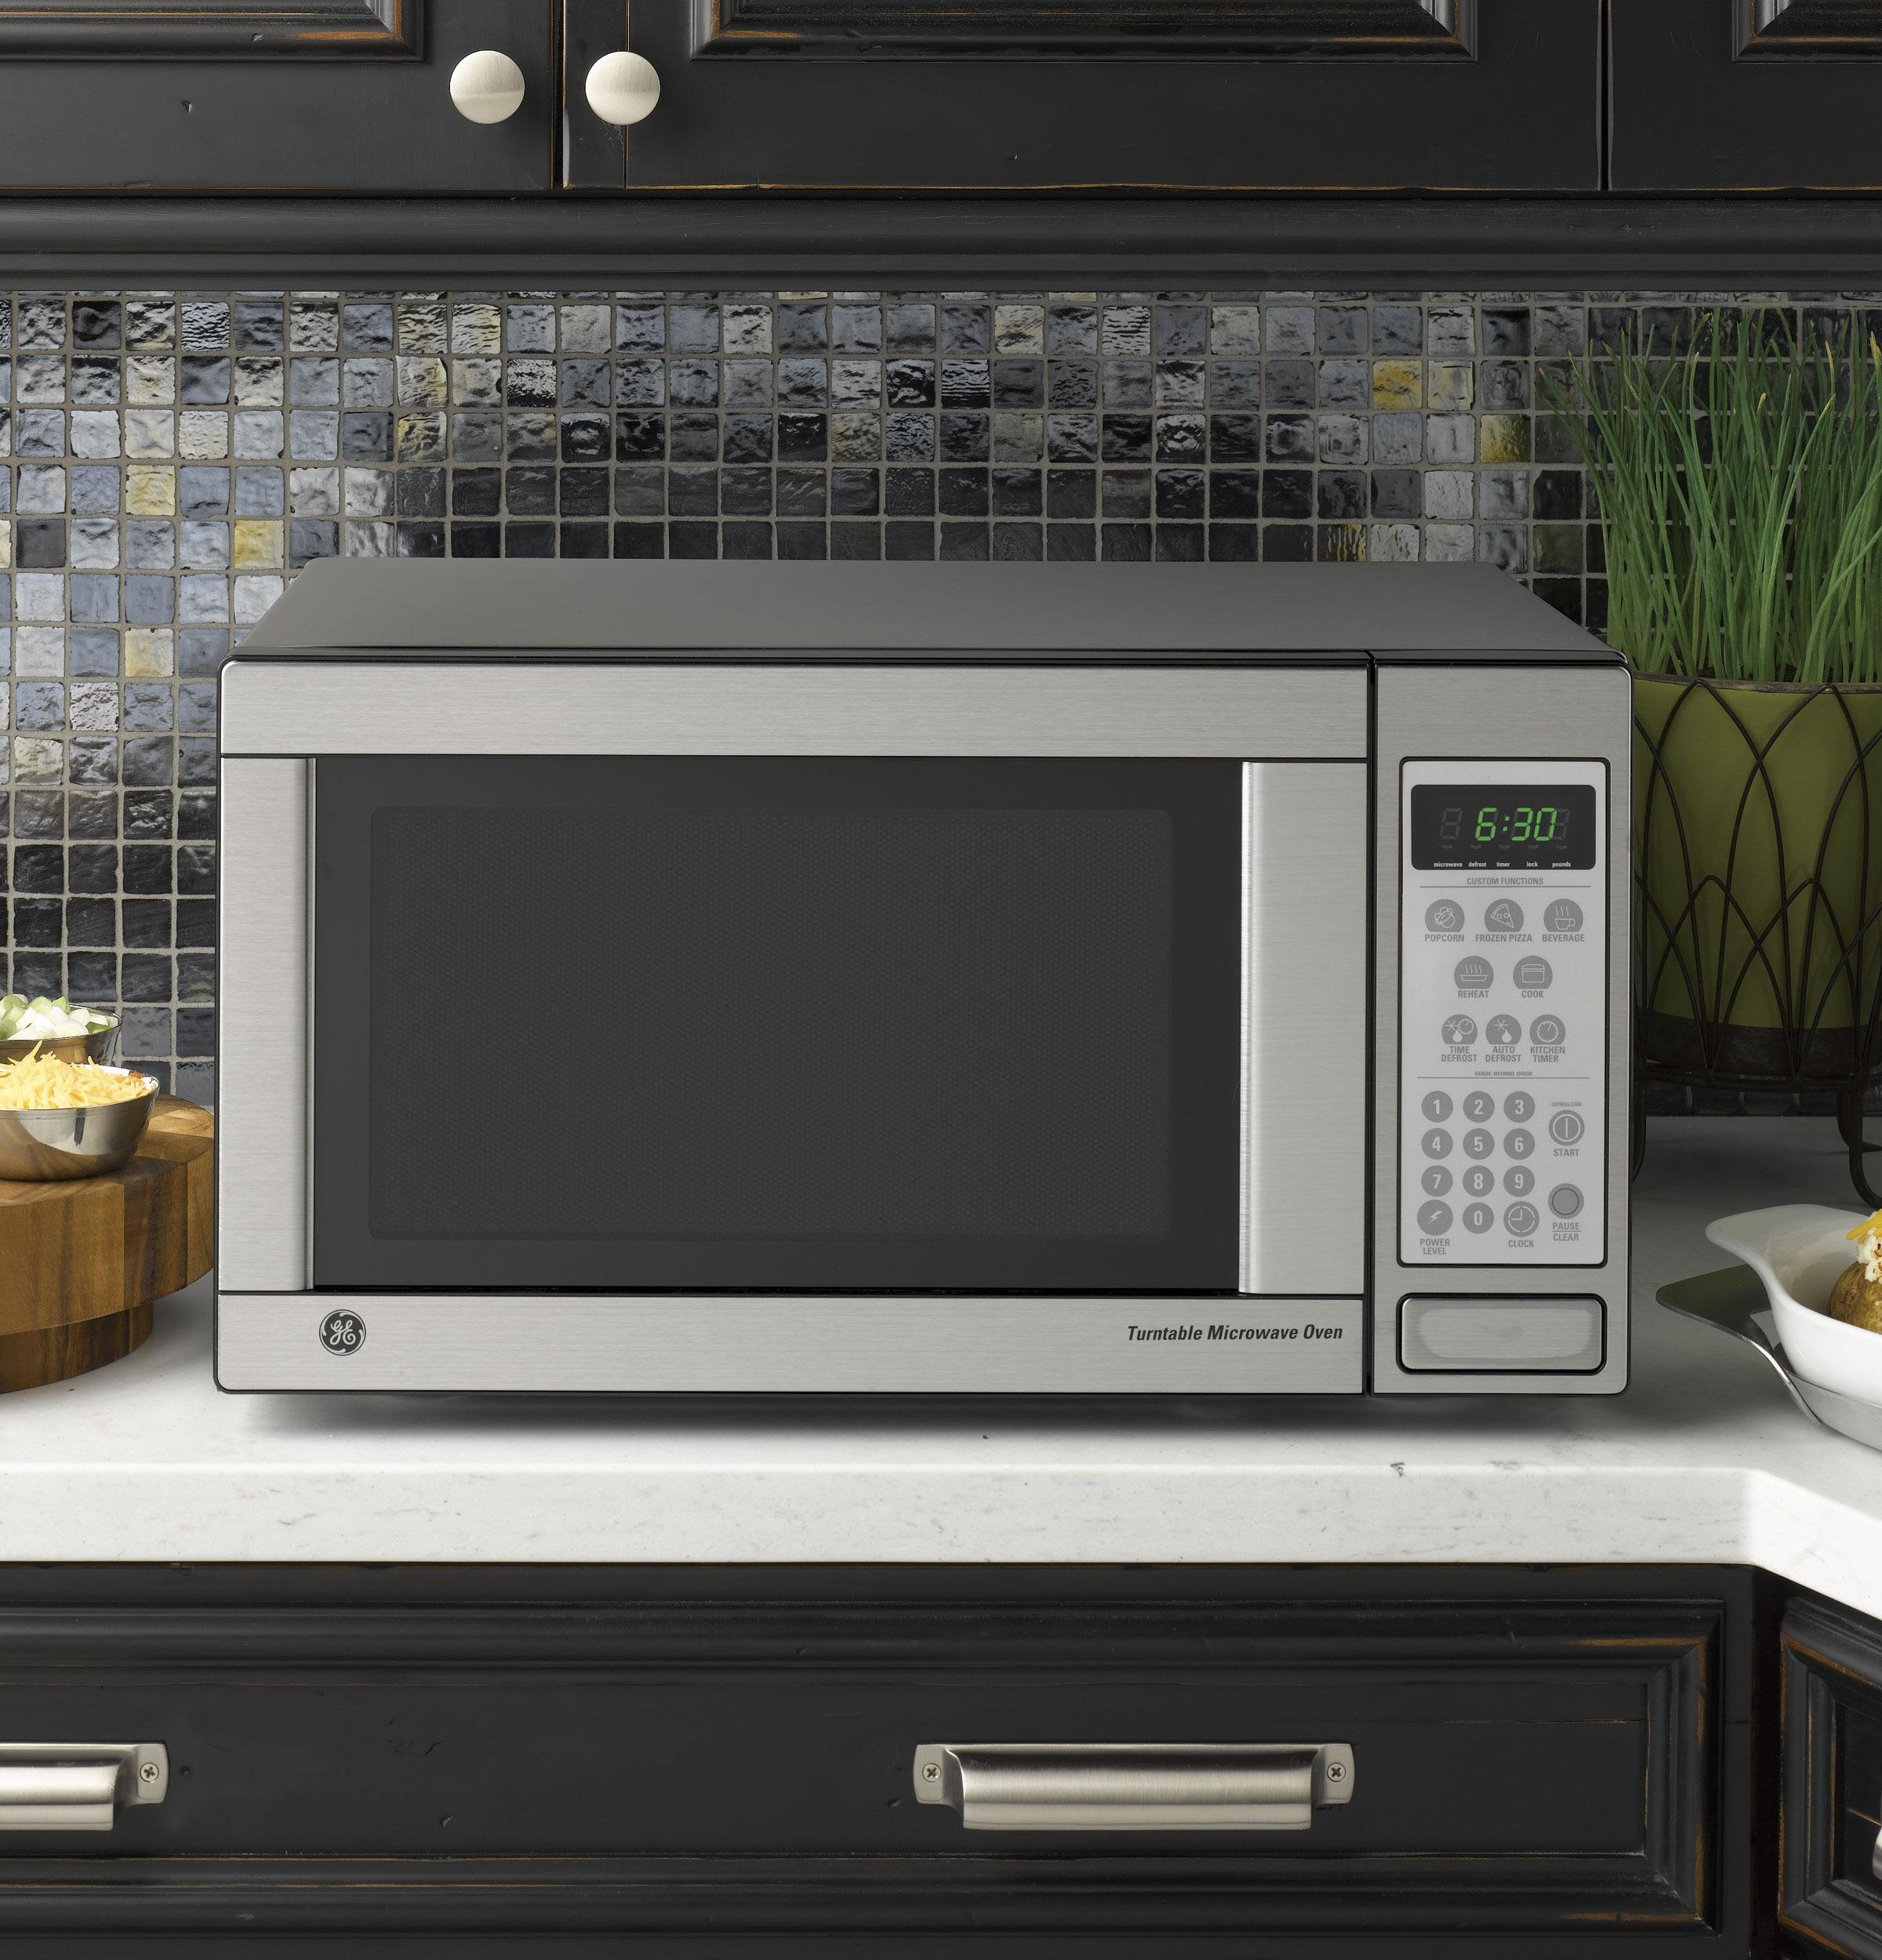 Лучшие свч печи. Микроволновая печь Microwave Oven. DNS LG Microwave Oven микроволновка. Микроволновая печь Bork w702. Микроволновая печь Miele отдельностоящая.